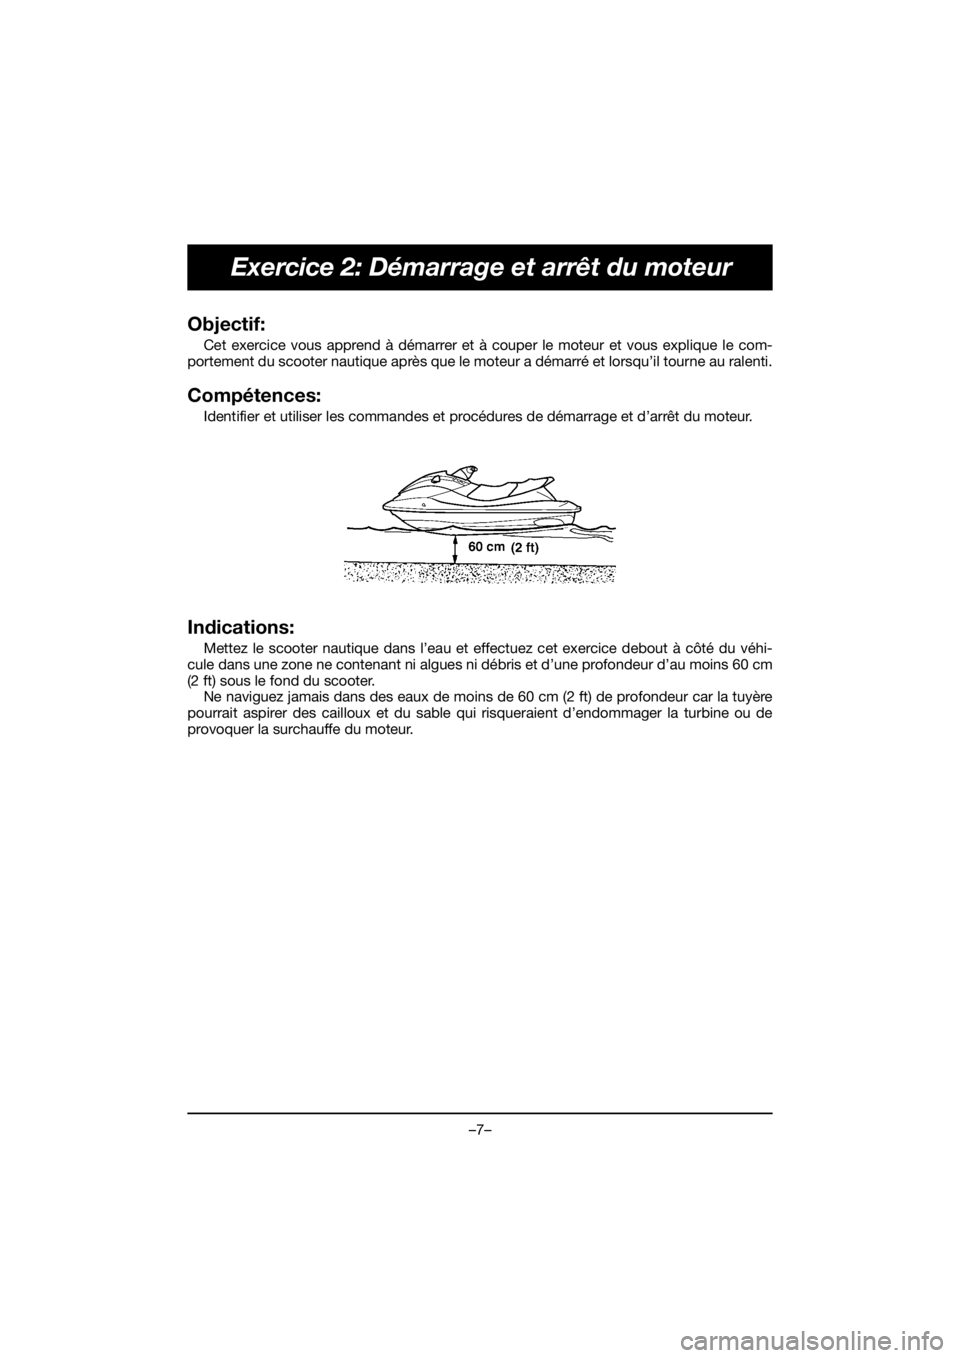 YAMAHA EX 2019  Notices Demploi (in French) –7–
Exercice 2: Démarrage et arrêt du moteur
Objectif: 
Cet exercice vous apprend à démarrer et à couper le moteur et vous explique le com-
portement du scooter nautique après que le moteur 